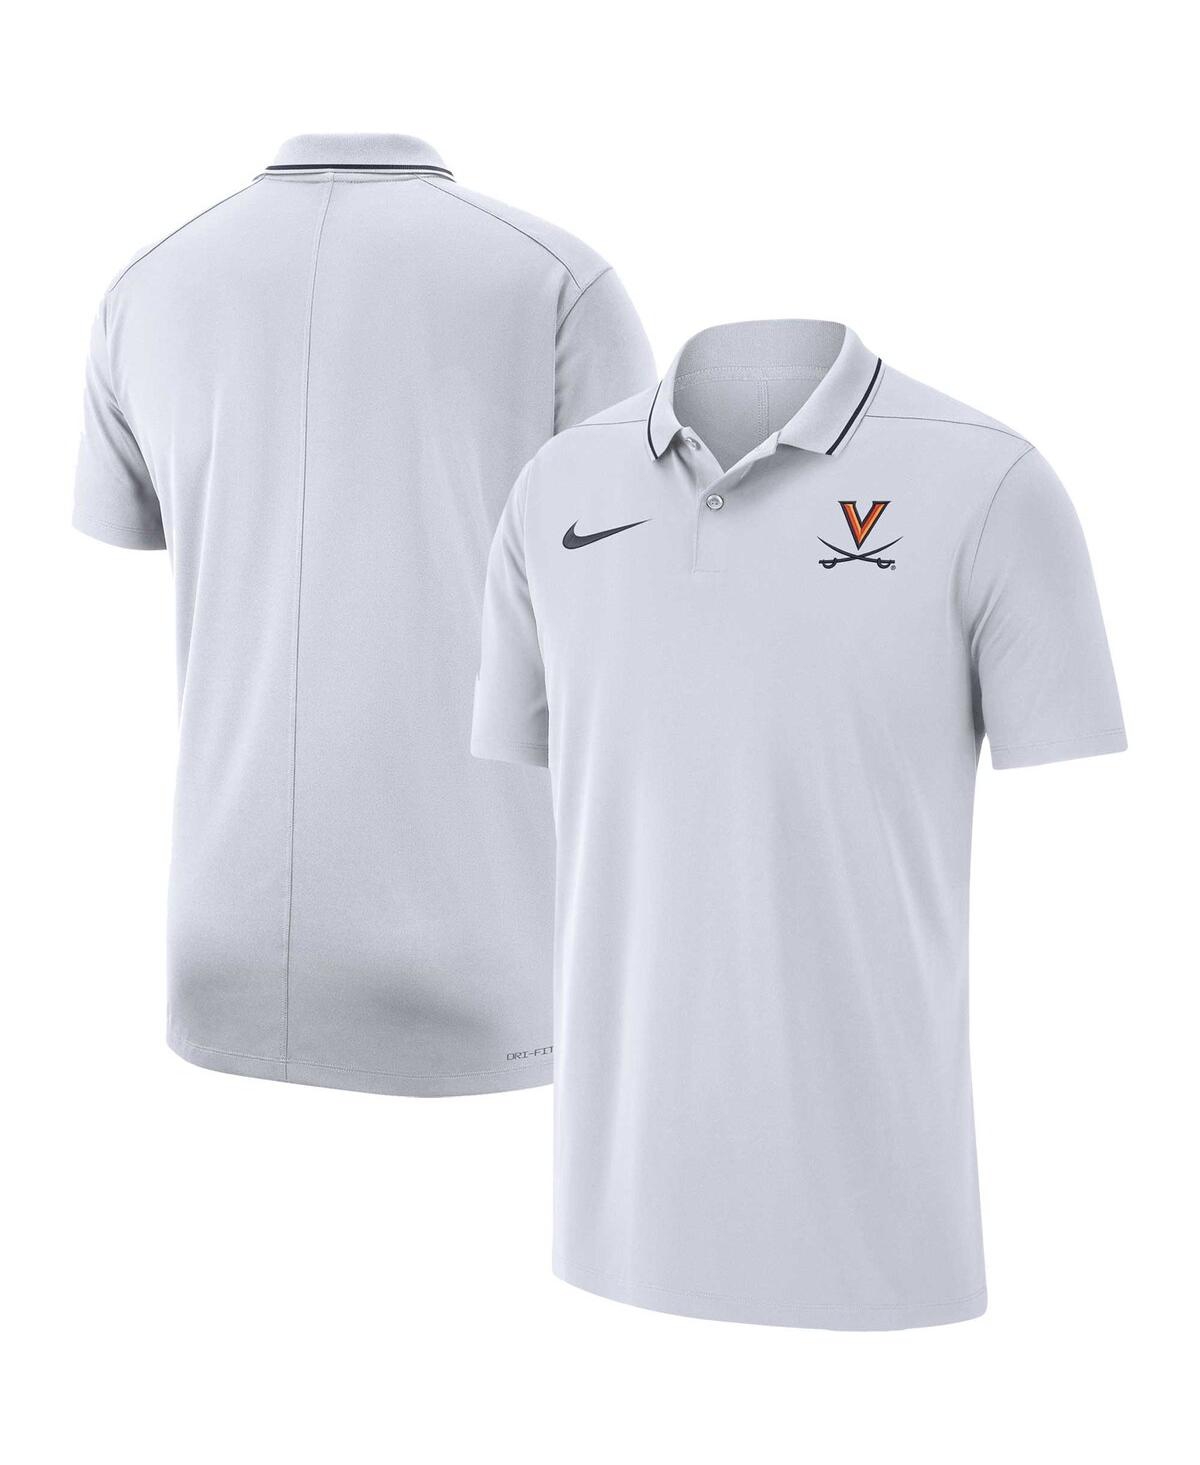 Men's Nike White Virginia Cavaliers Coaches Performance Polo Shirt - White